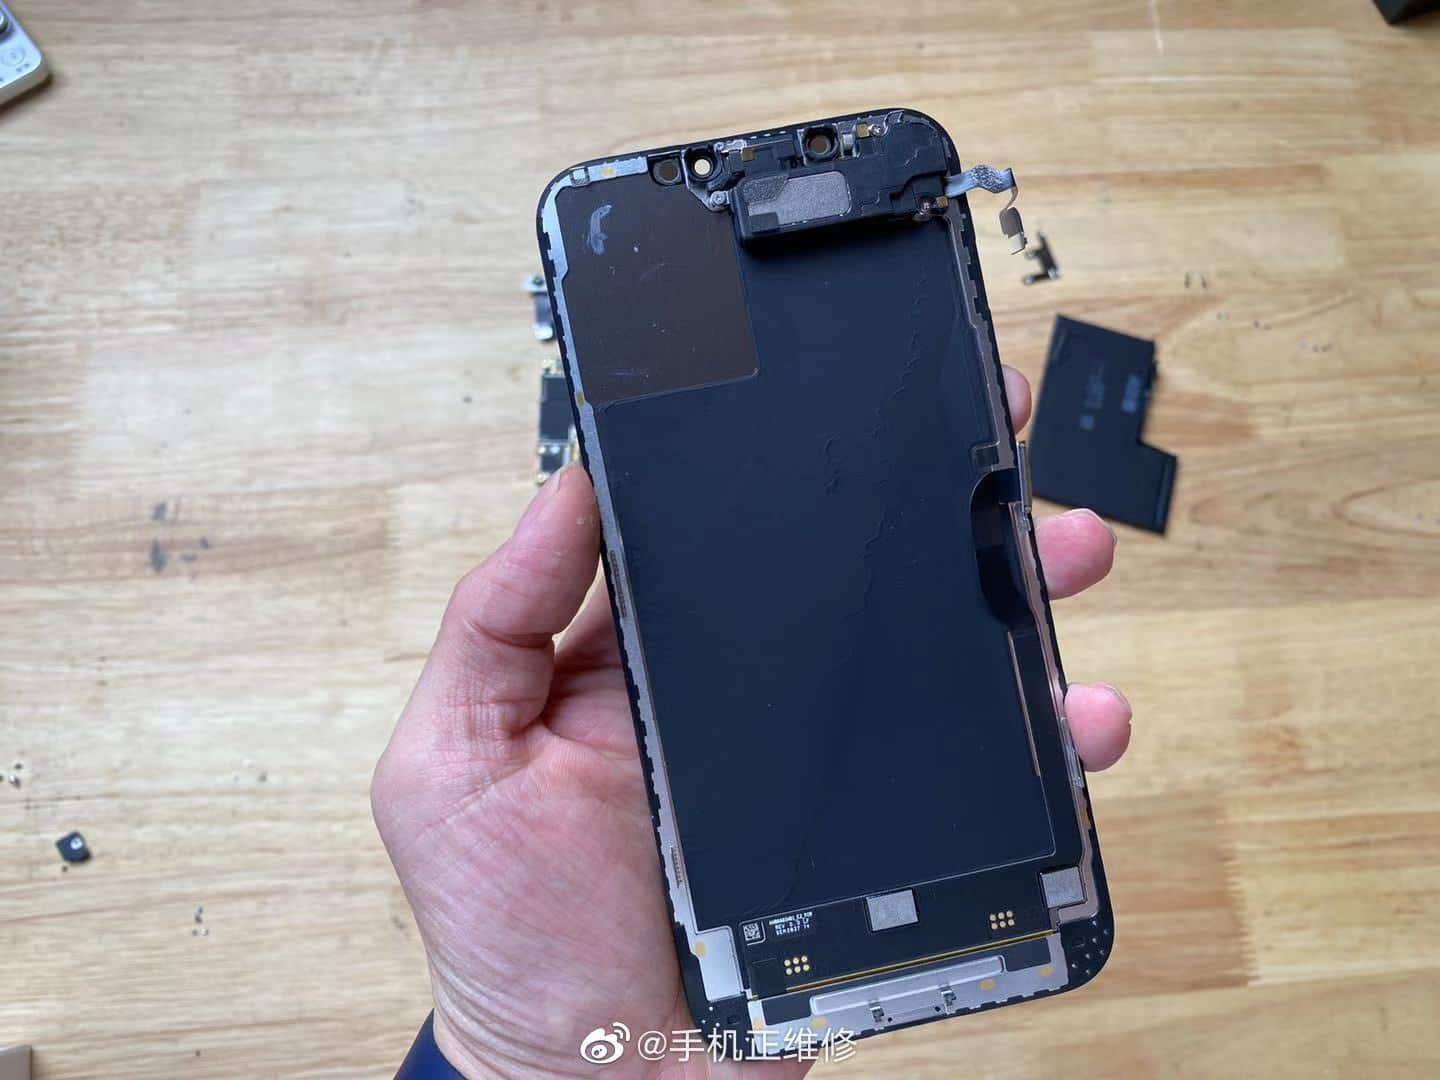 Tháo tung iPhone 12 Pro Max cho thấy viên pin dung lượng thấp hơn thế hệ trước